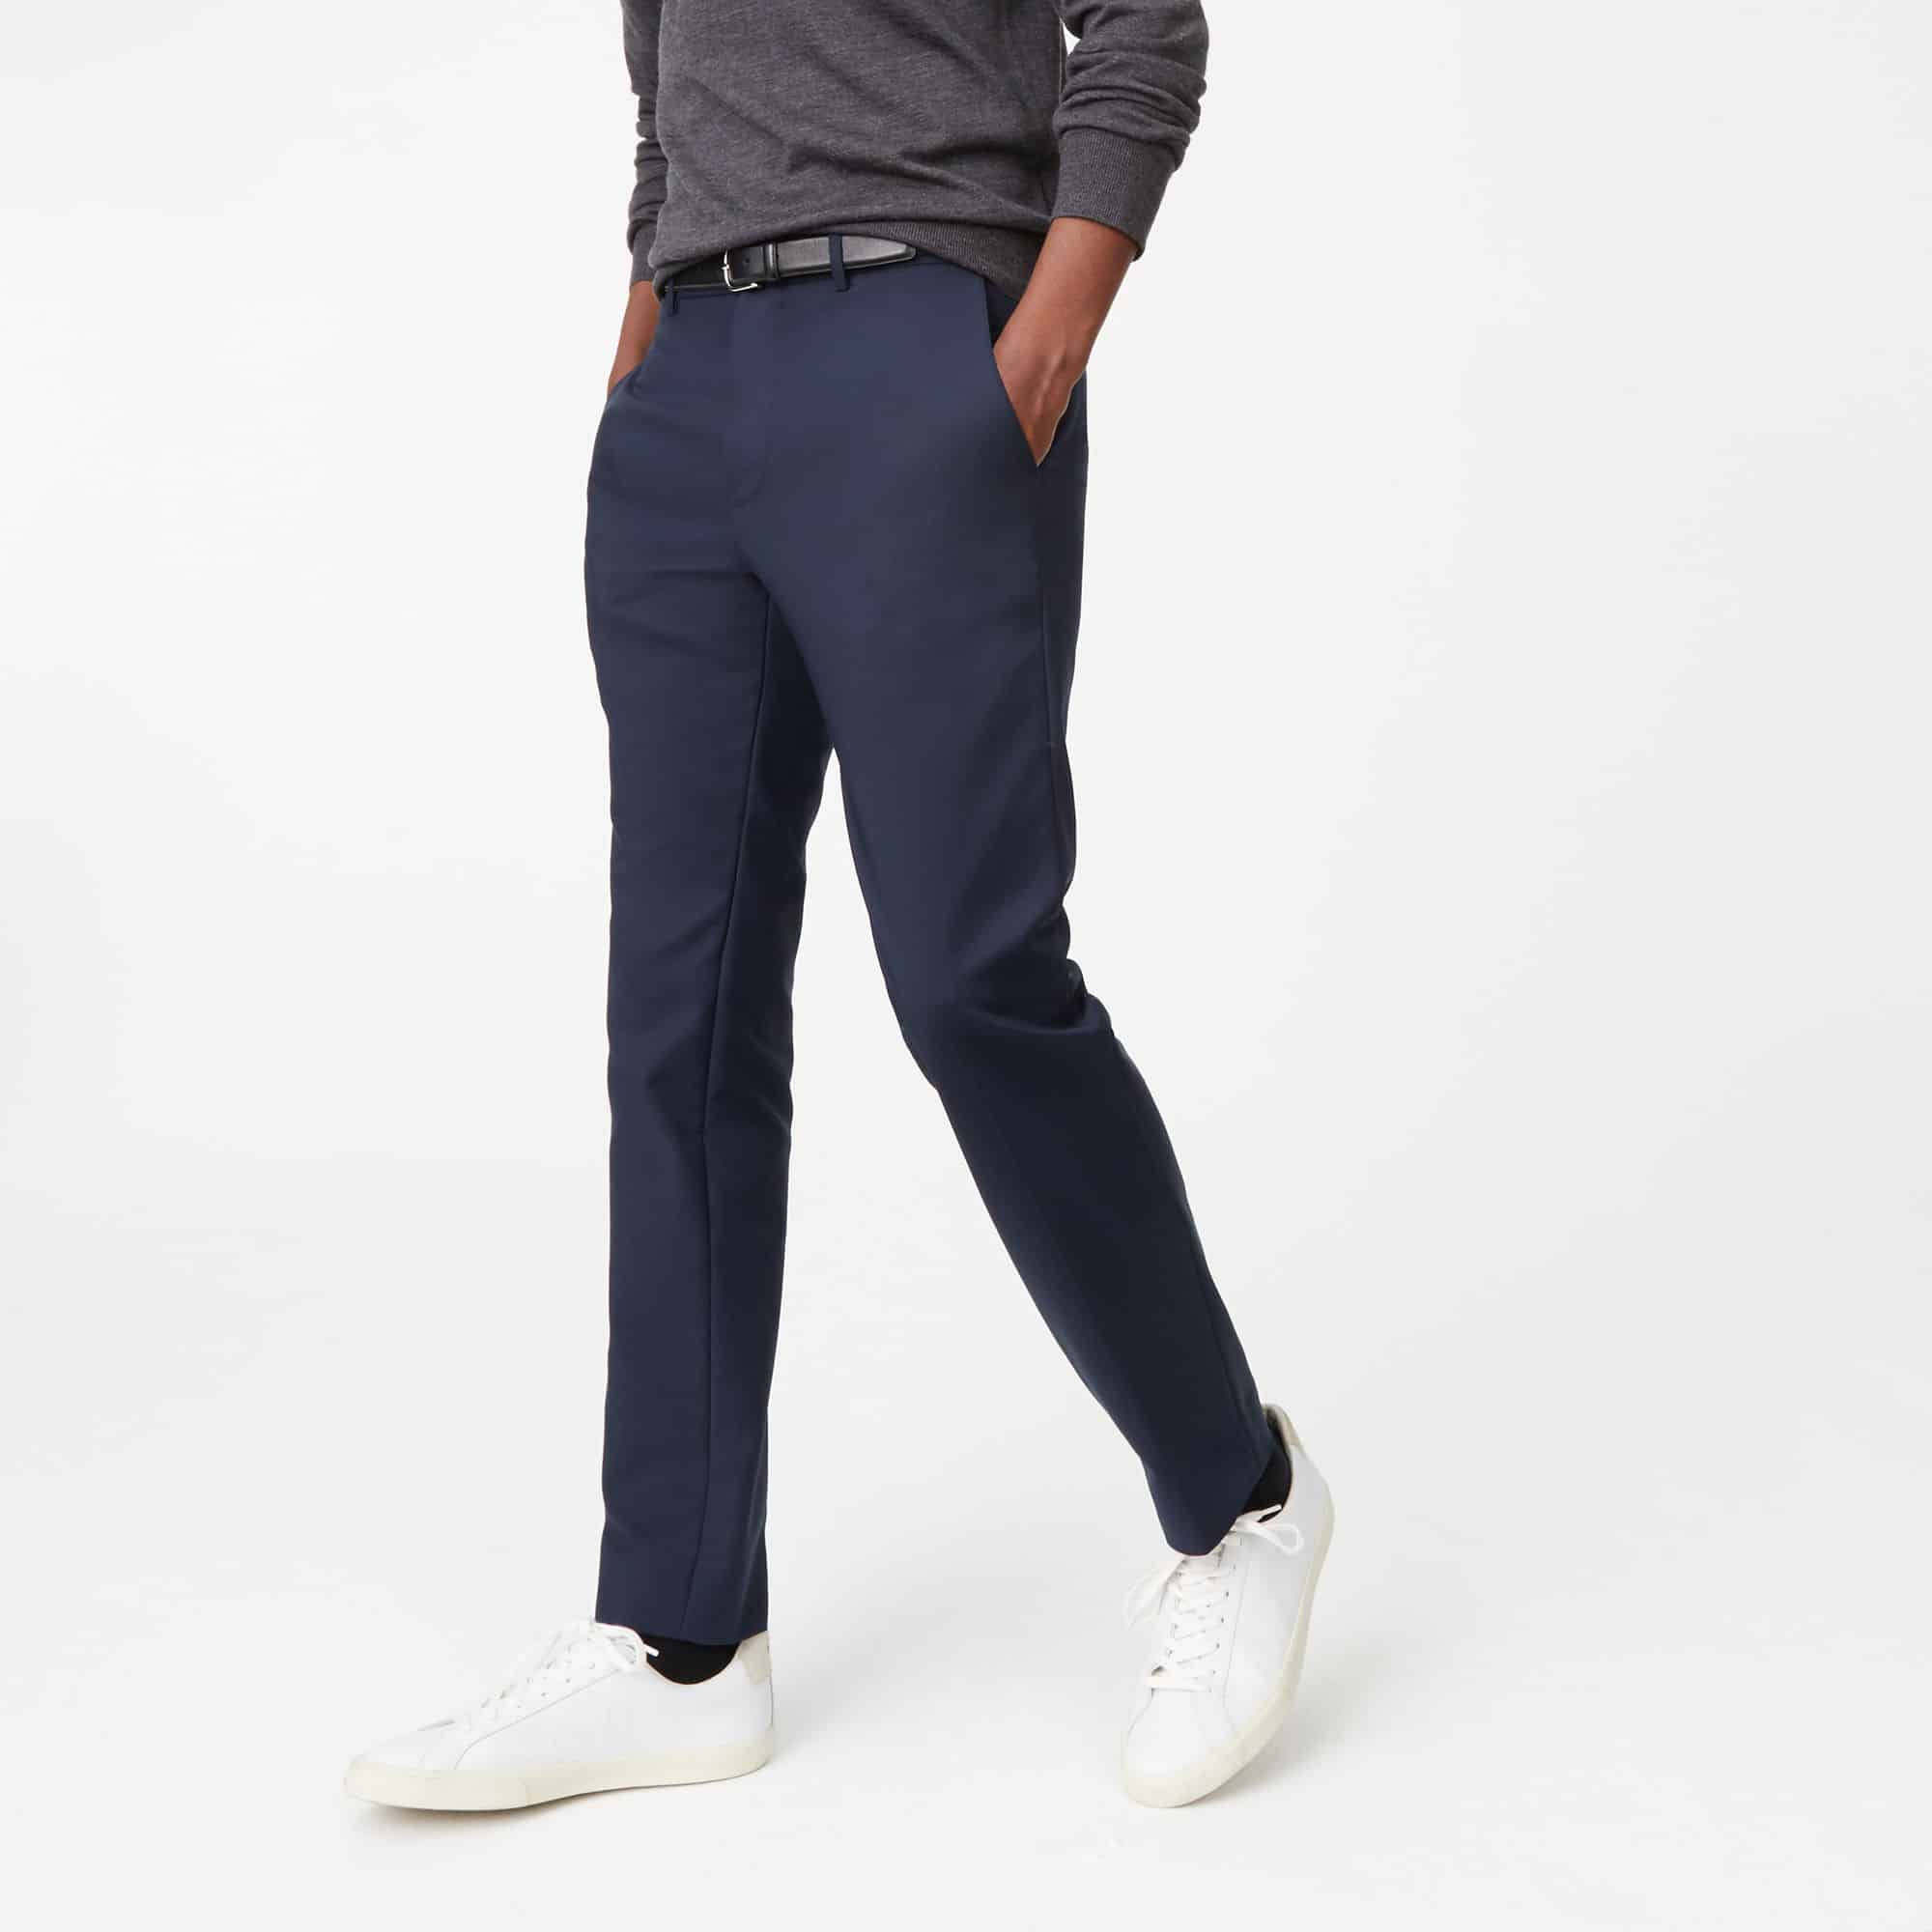 Most Comfortable Dress Pants for Men | ComfortNerd